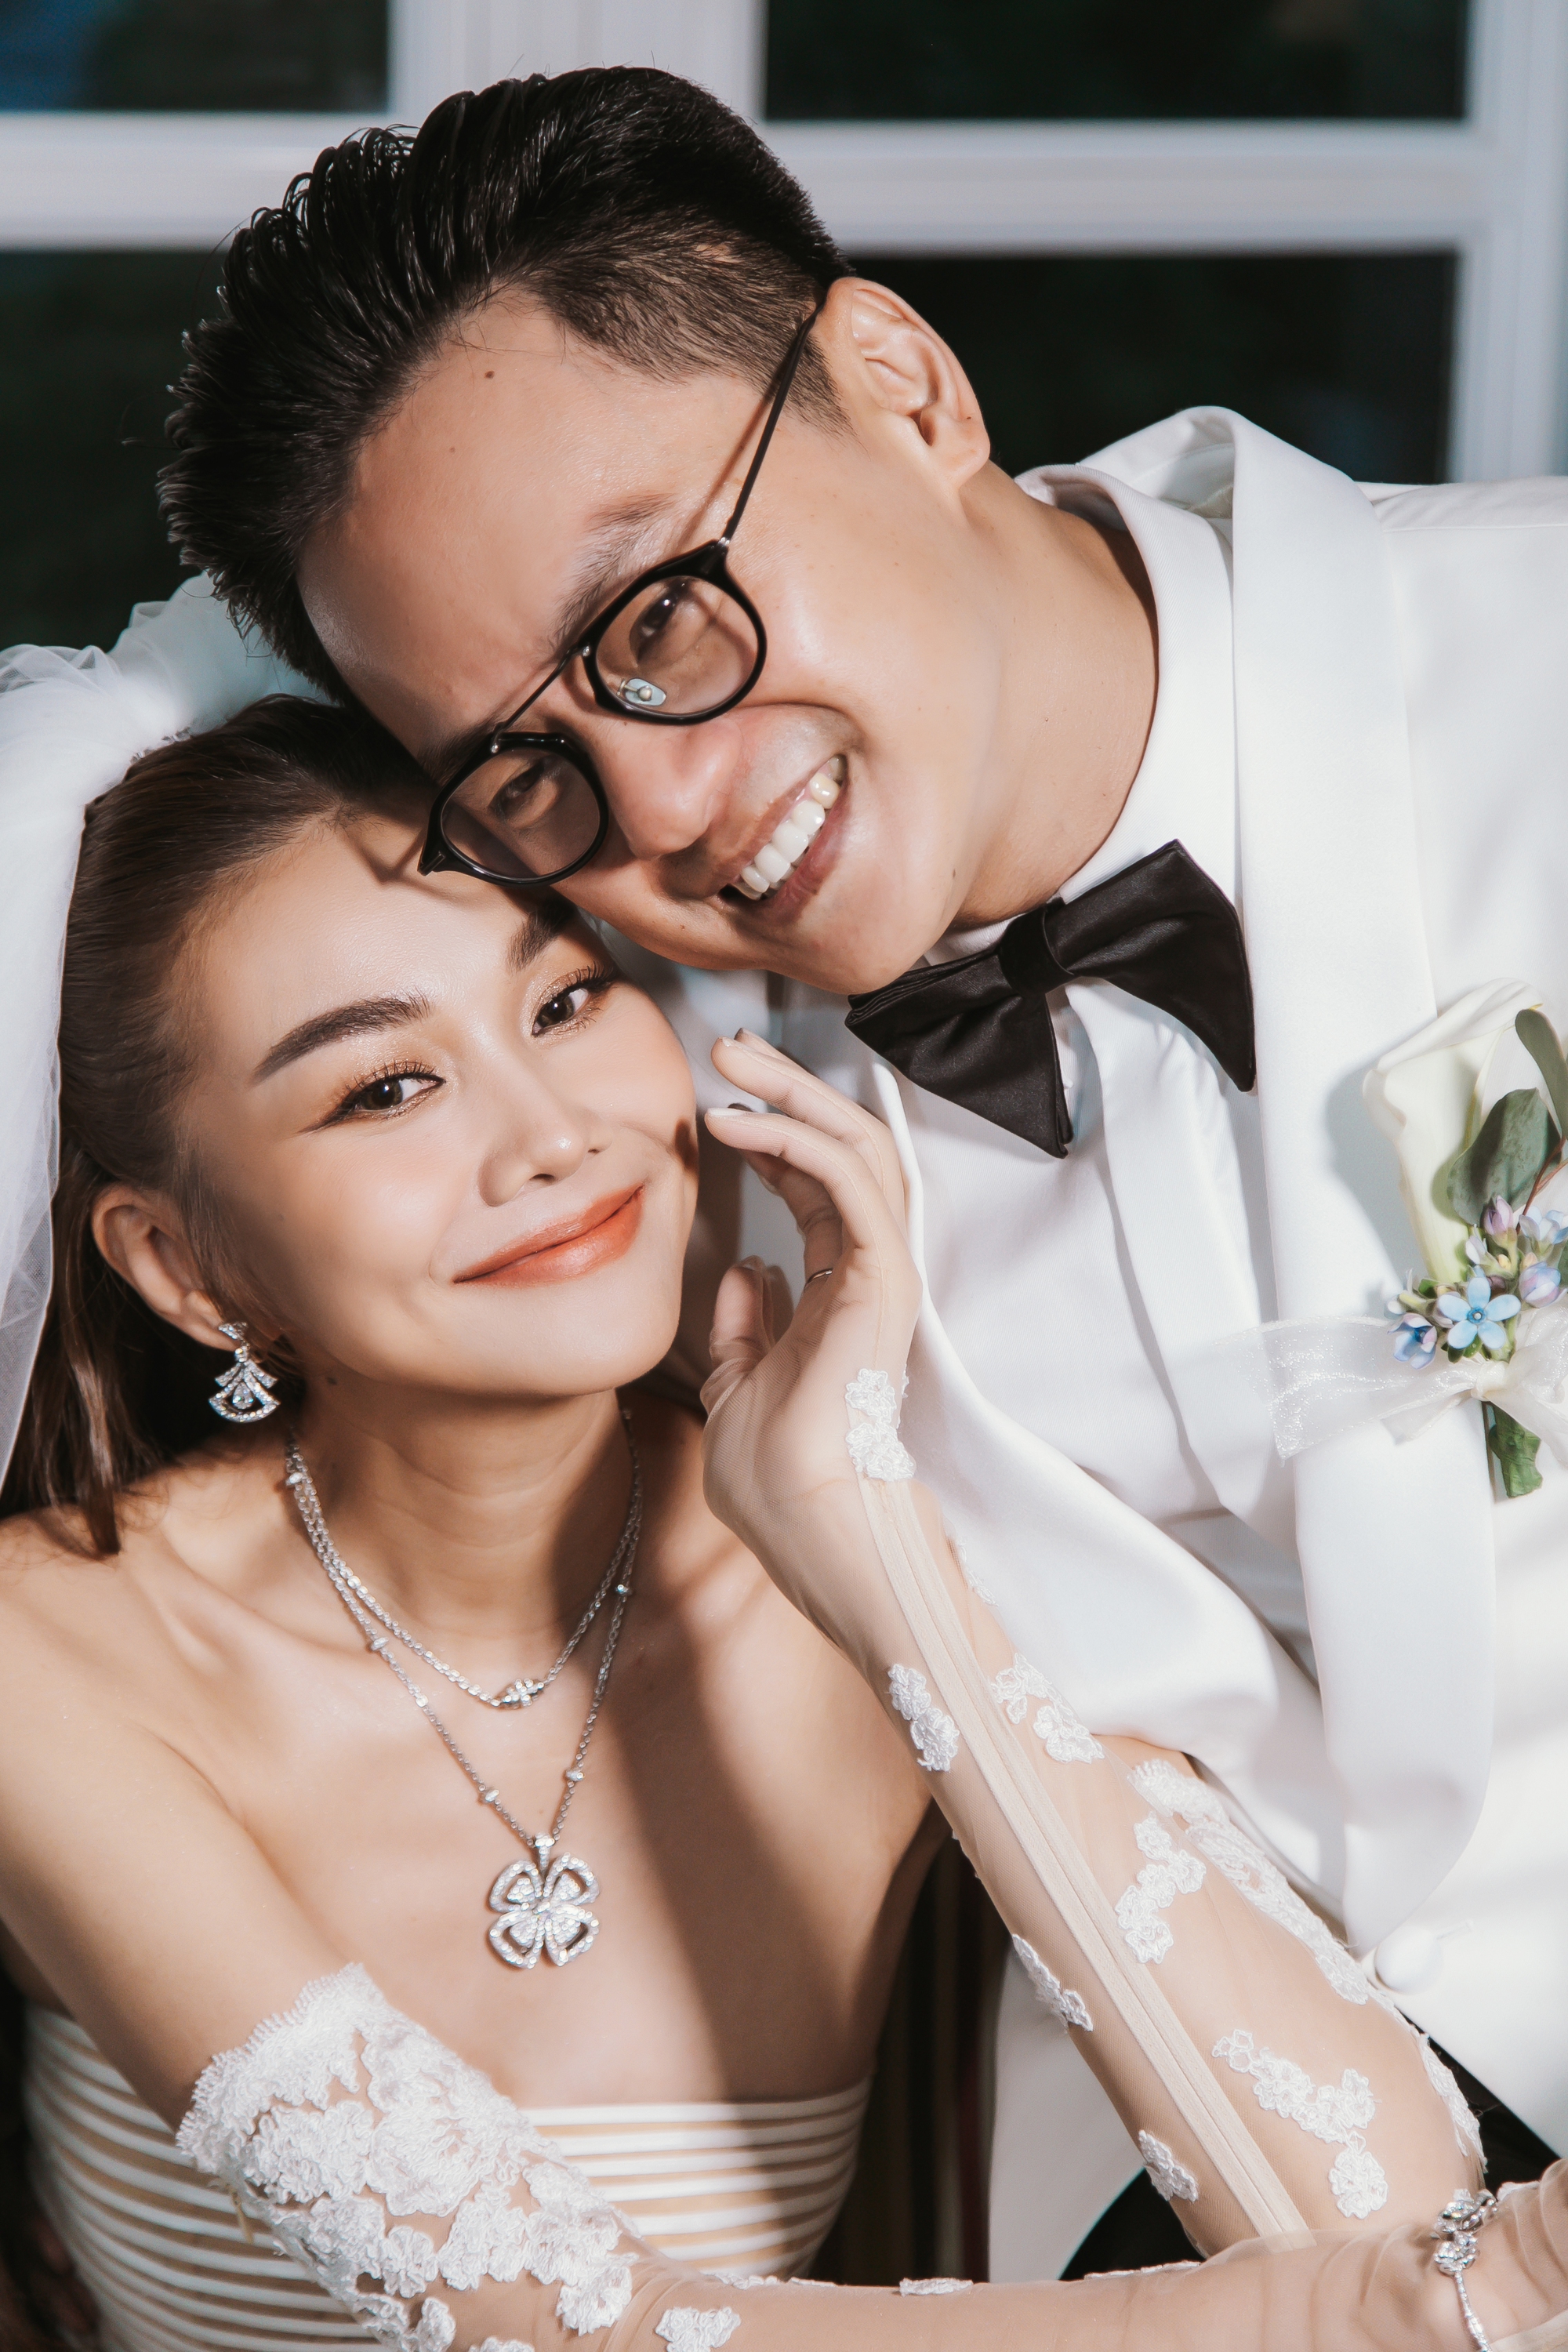 Siêu mẫu Thanh Hằng đeo trang sức hơn 10 tỉ đồng trong đám cưới - Ảnh 10.